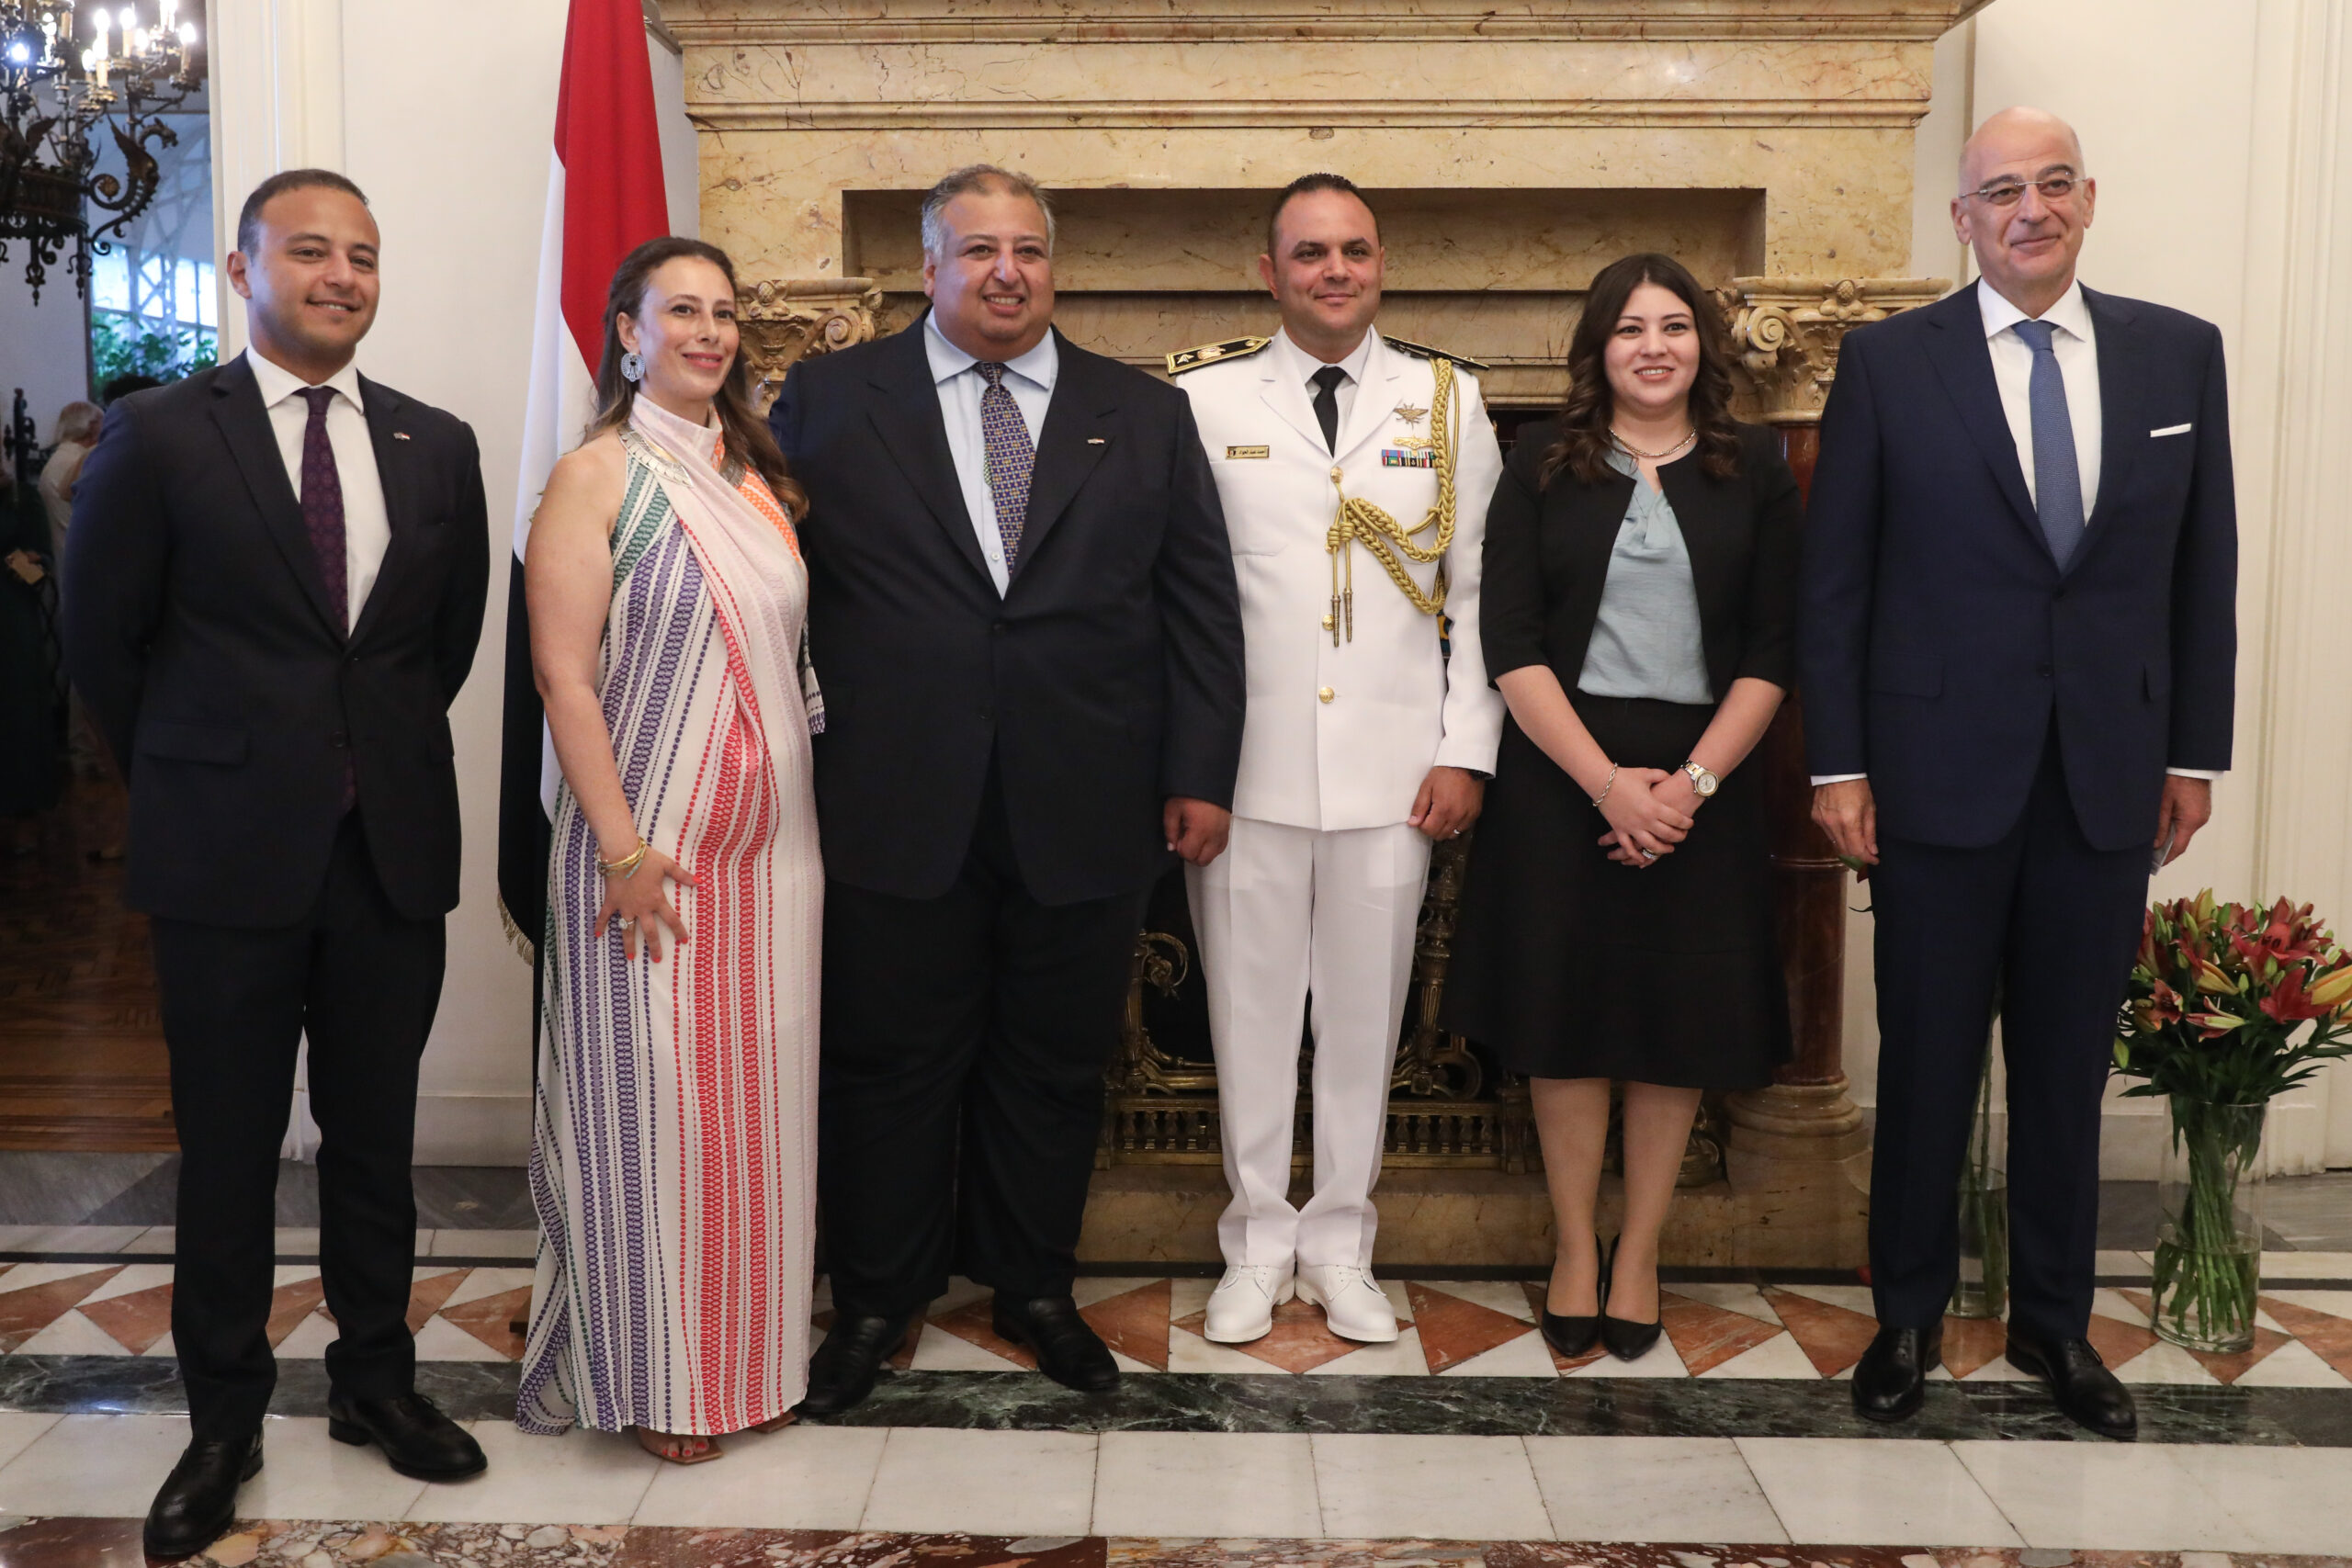 Ο Υπουργός Εξωτερικών Νίκος Δένδιας παρευρέθηκε σε εκδήλωση για την Εθνική γιορτή της Αιγύπτου, στην πρεσβέια της Αιγύπτου, στην Αθήνα, Παρασκευή 15 Ιουλίου, 2022. Τον Υπουργό υποδέχτηκε ο Επιτετραμμένος της Αραβικής Δημοκρατίας της Αιγύπτου Άμγκαντ Α. Ρέζεκ (Amagd A. Rezk).